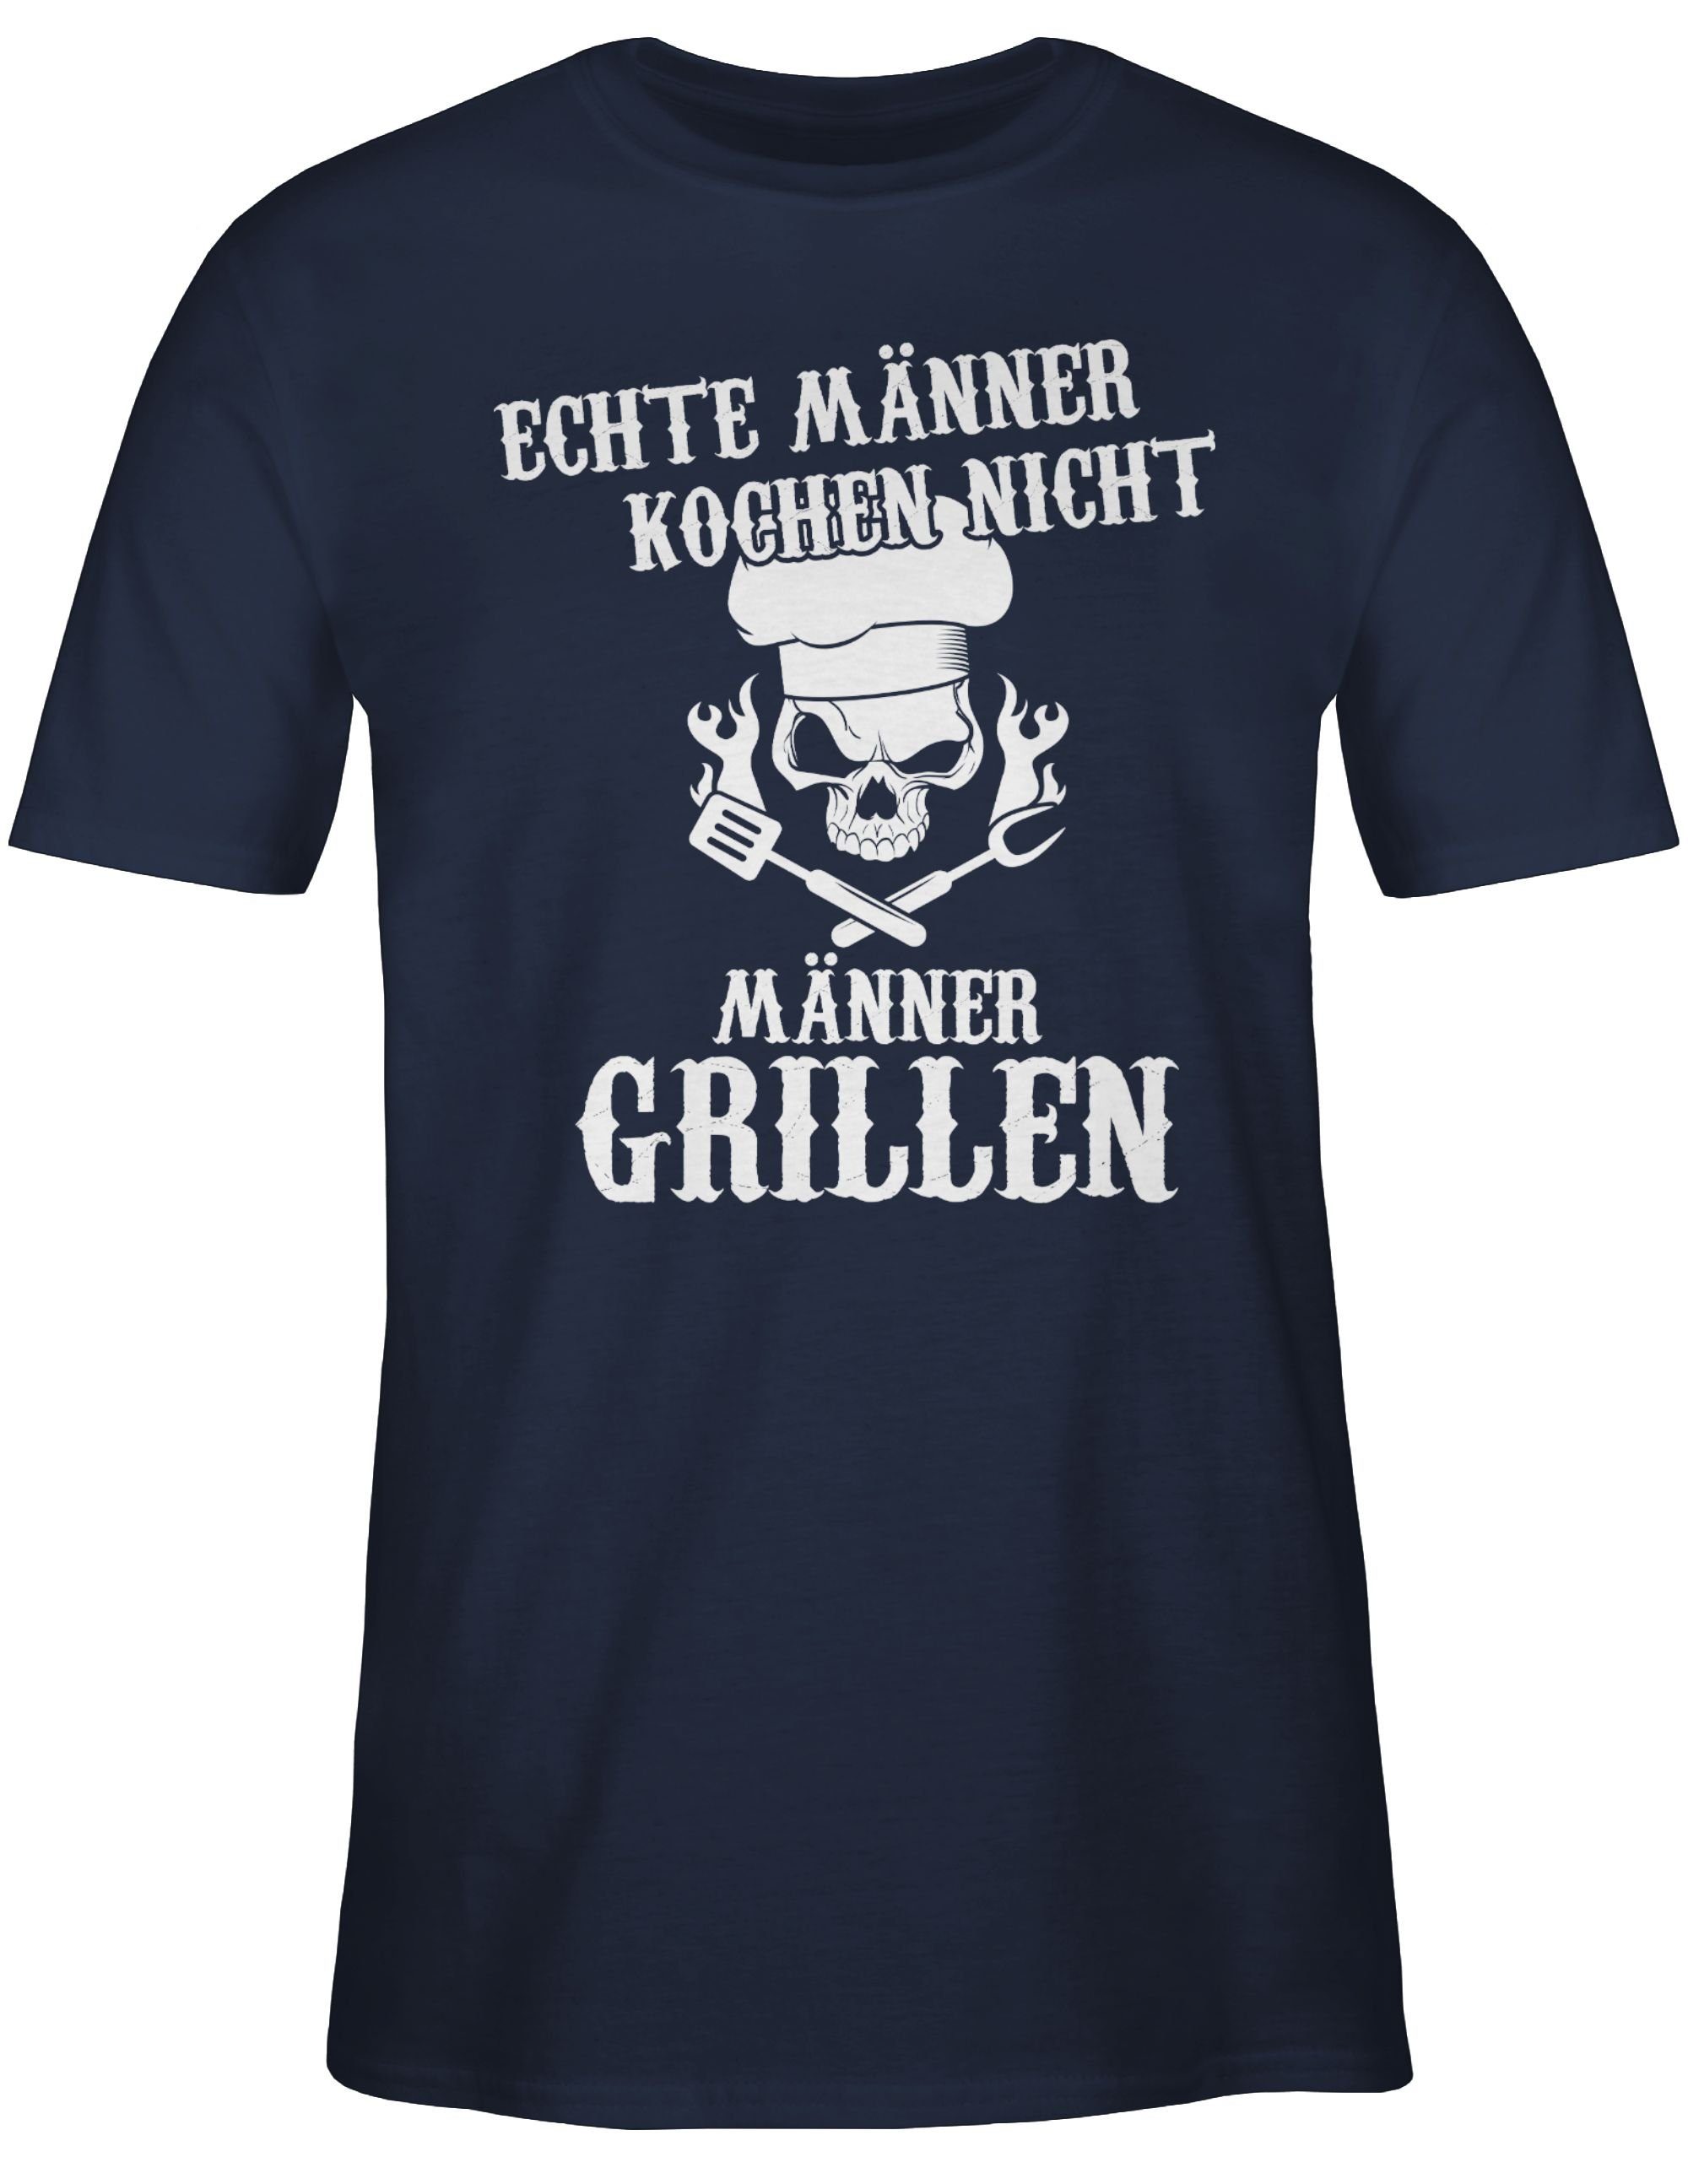 Shirtracer T-Shirt Echte Männer Blau Grillzubehör grillen kochen nicht Navy 2 & Grillen Geschenk Männer